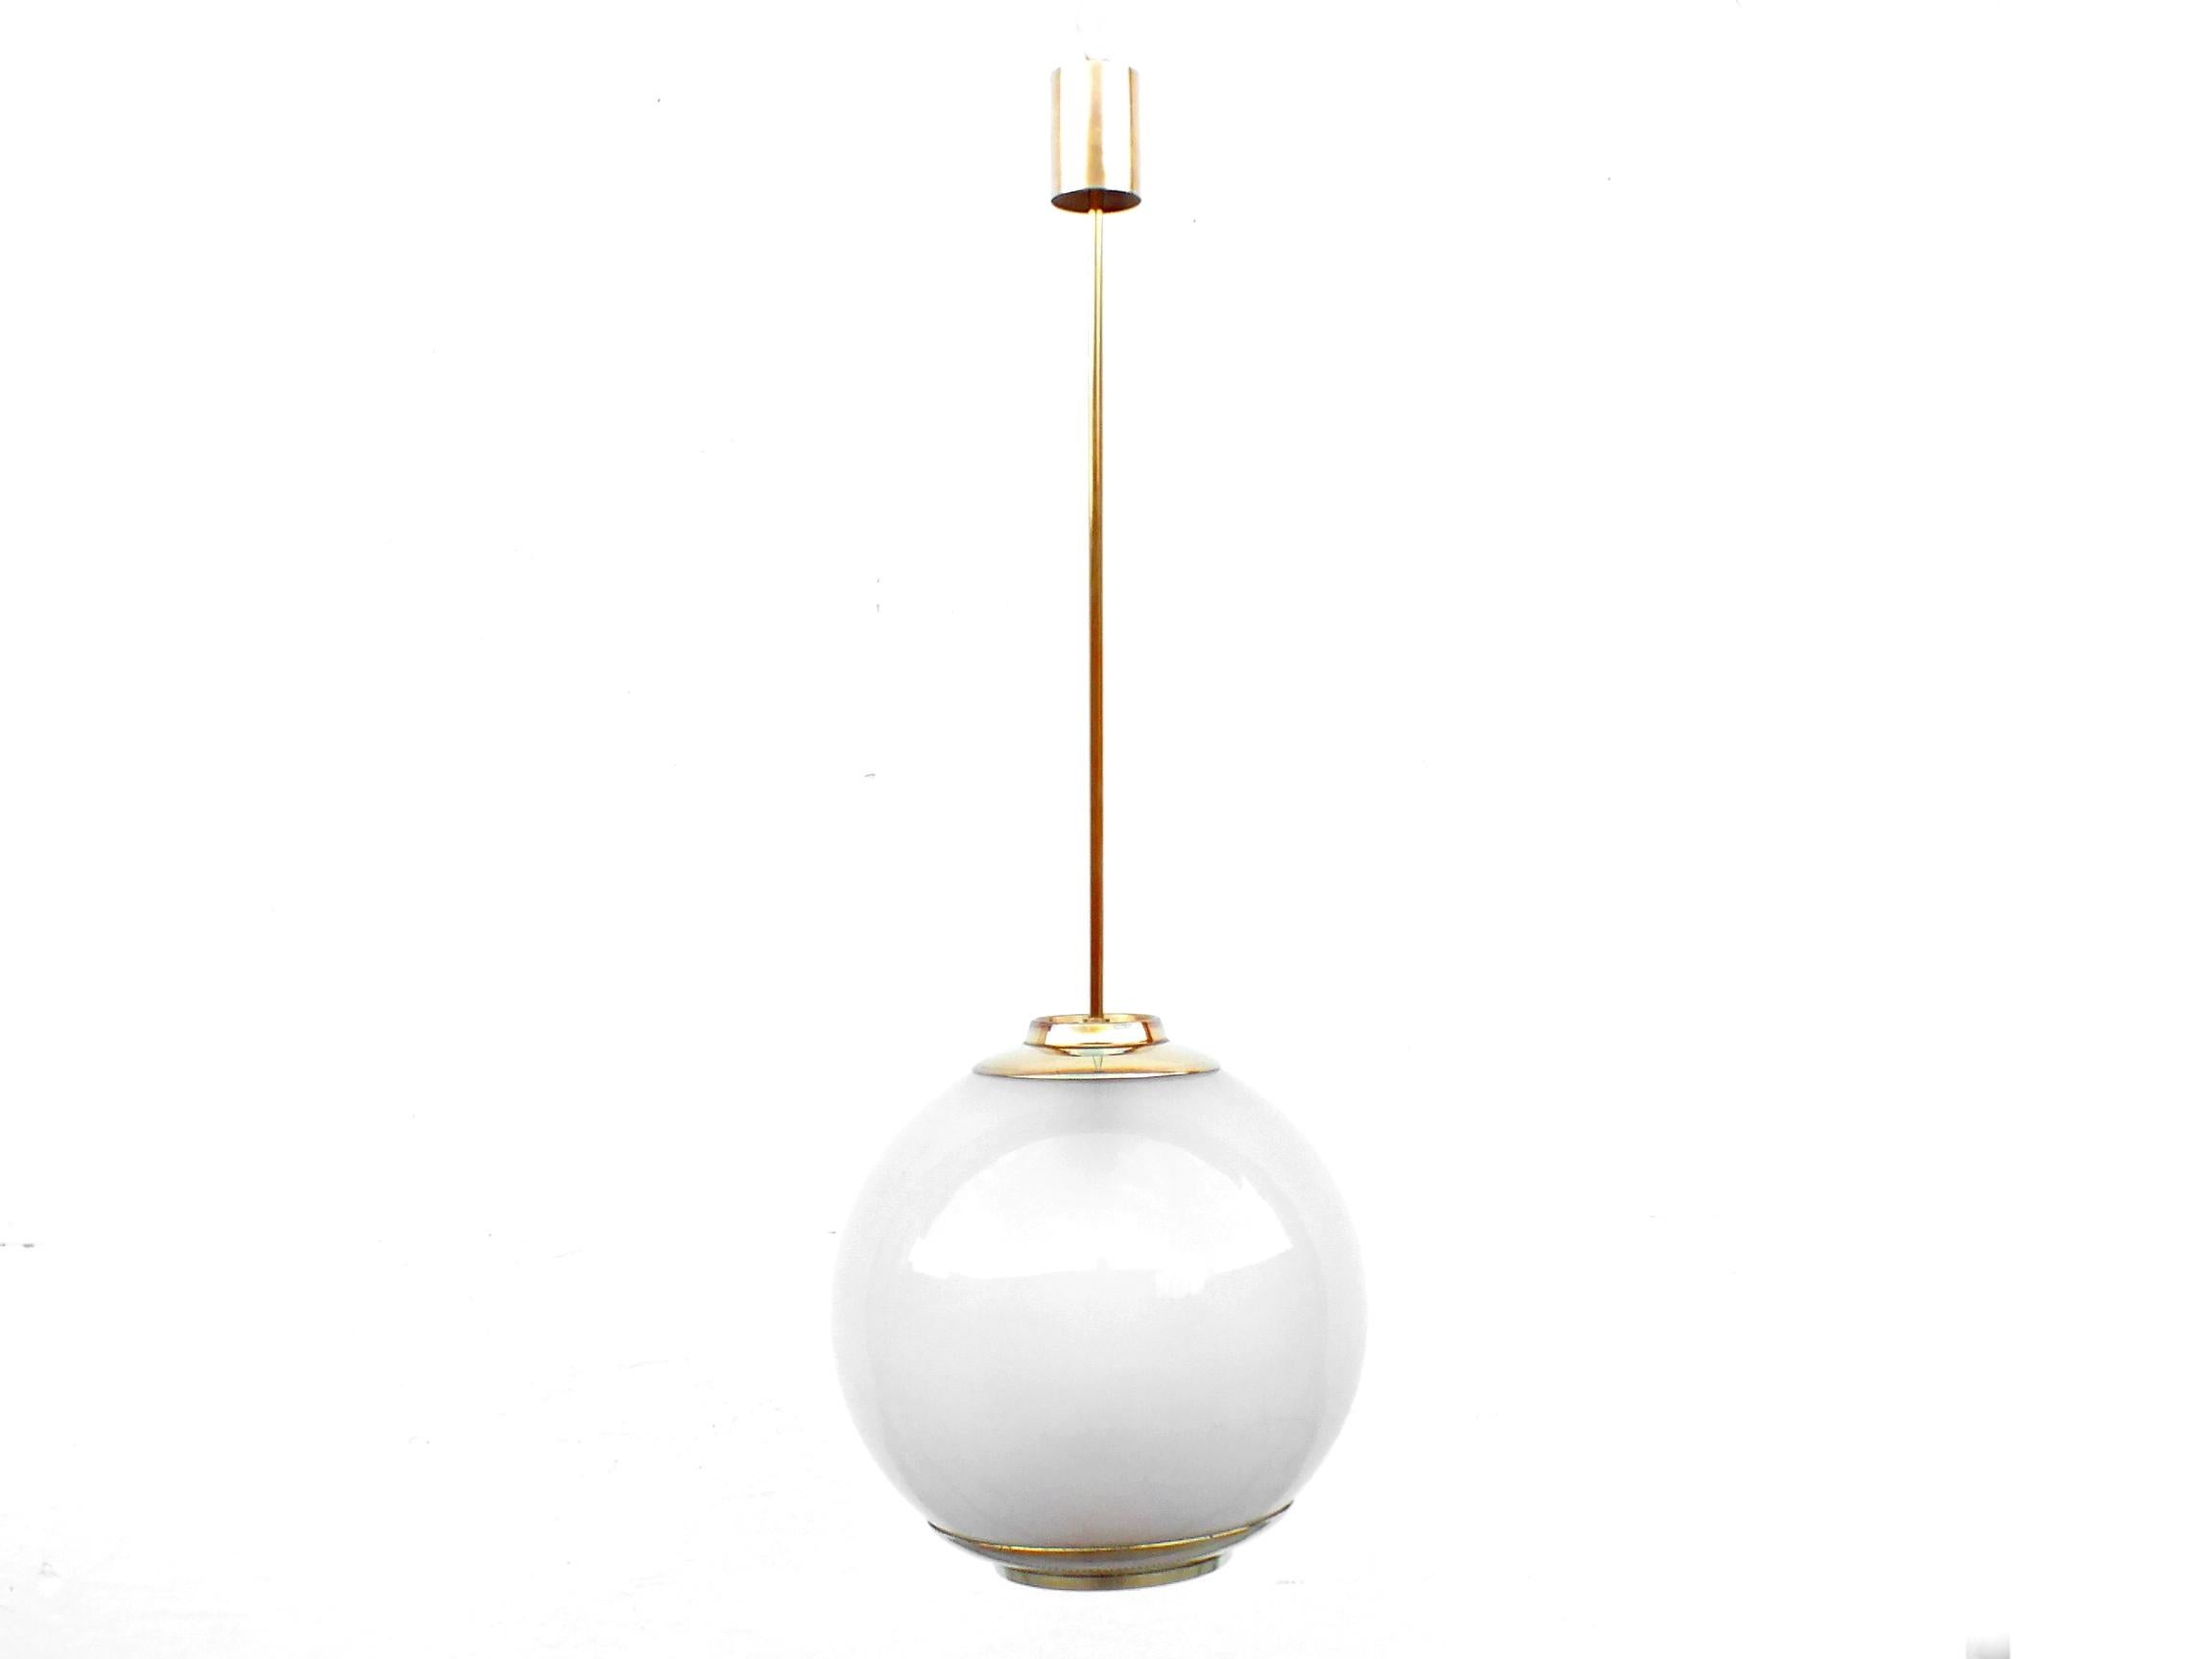 Azucena Italy prod. Luigi Caccia Dominioni design années '52 plafonnier Ls2 parfait état vintage A

la vente est pour une lampe mais sont à disposer deux lampes azucena identique mais mesure de la tige / hauteur légèrement différente ...

  mesure ;